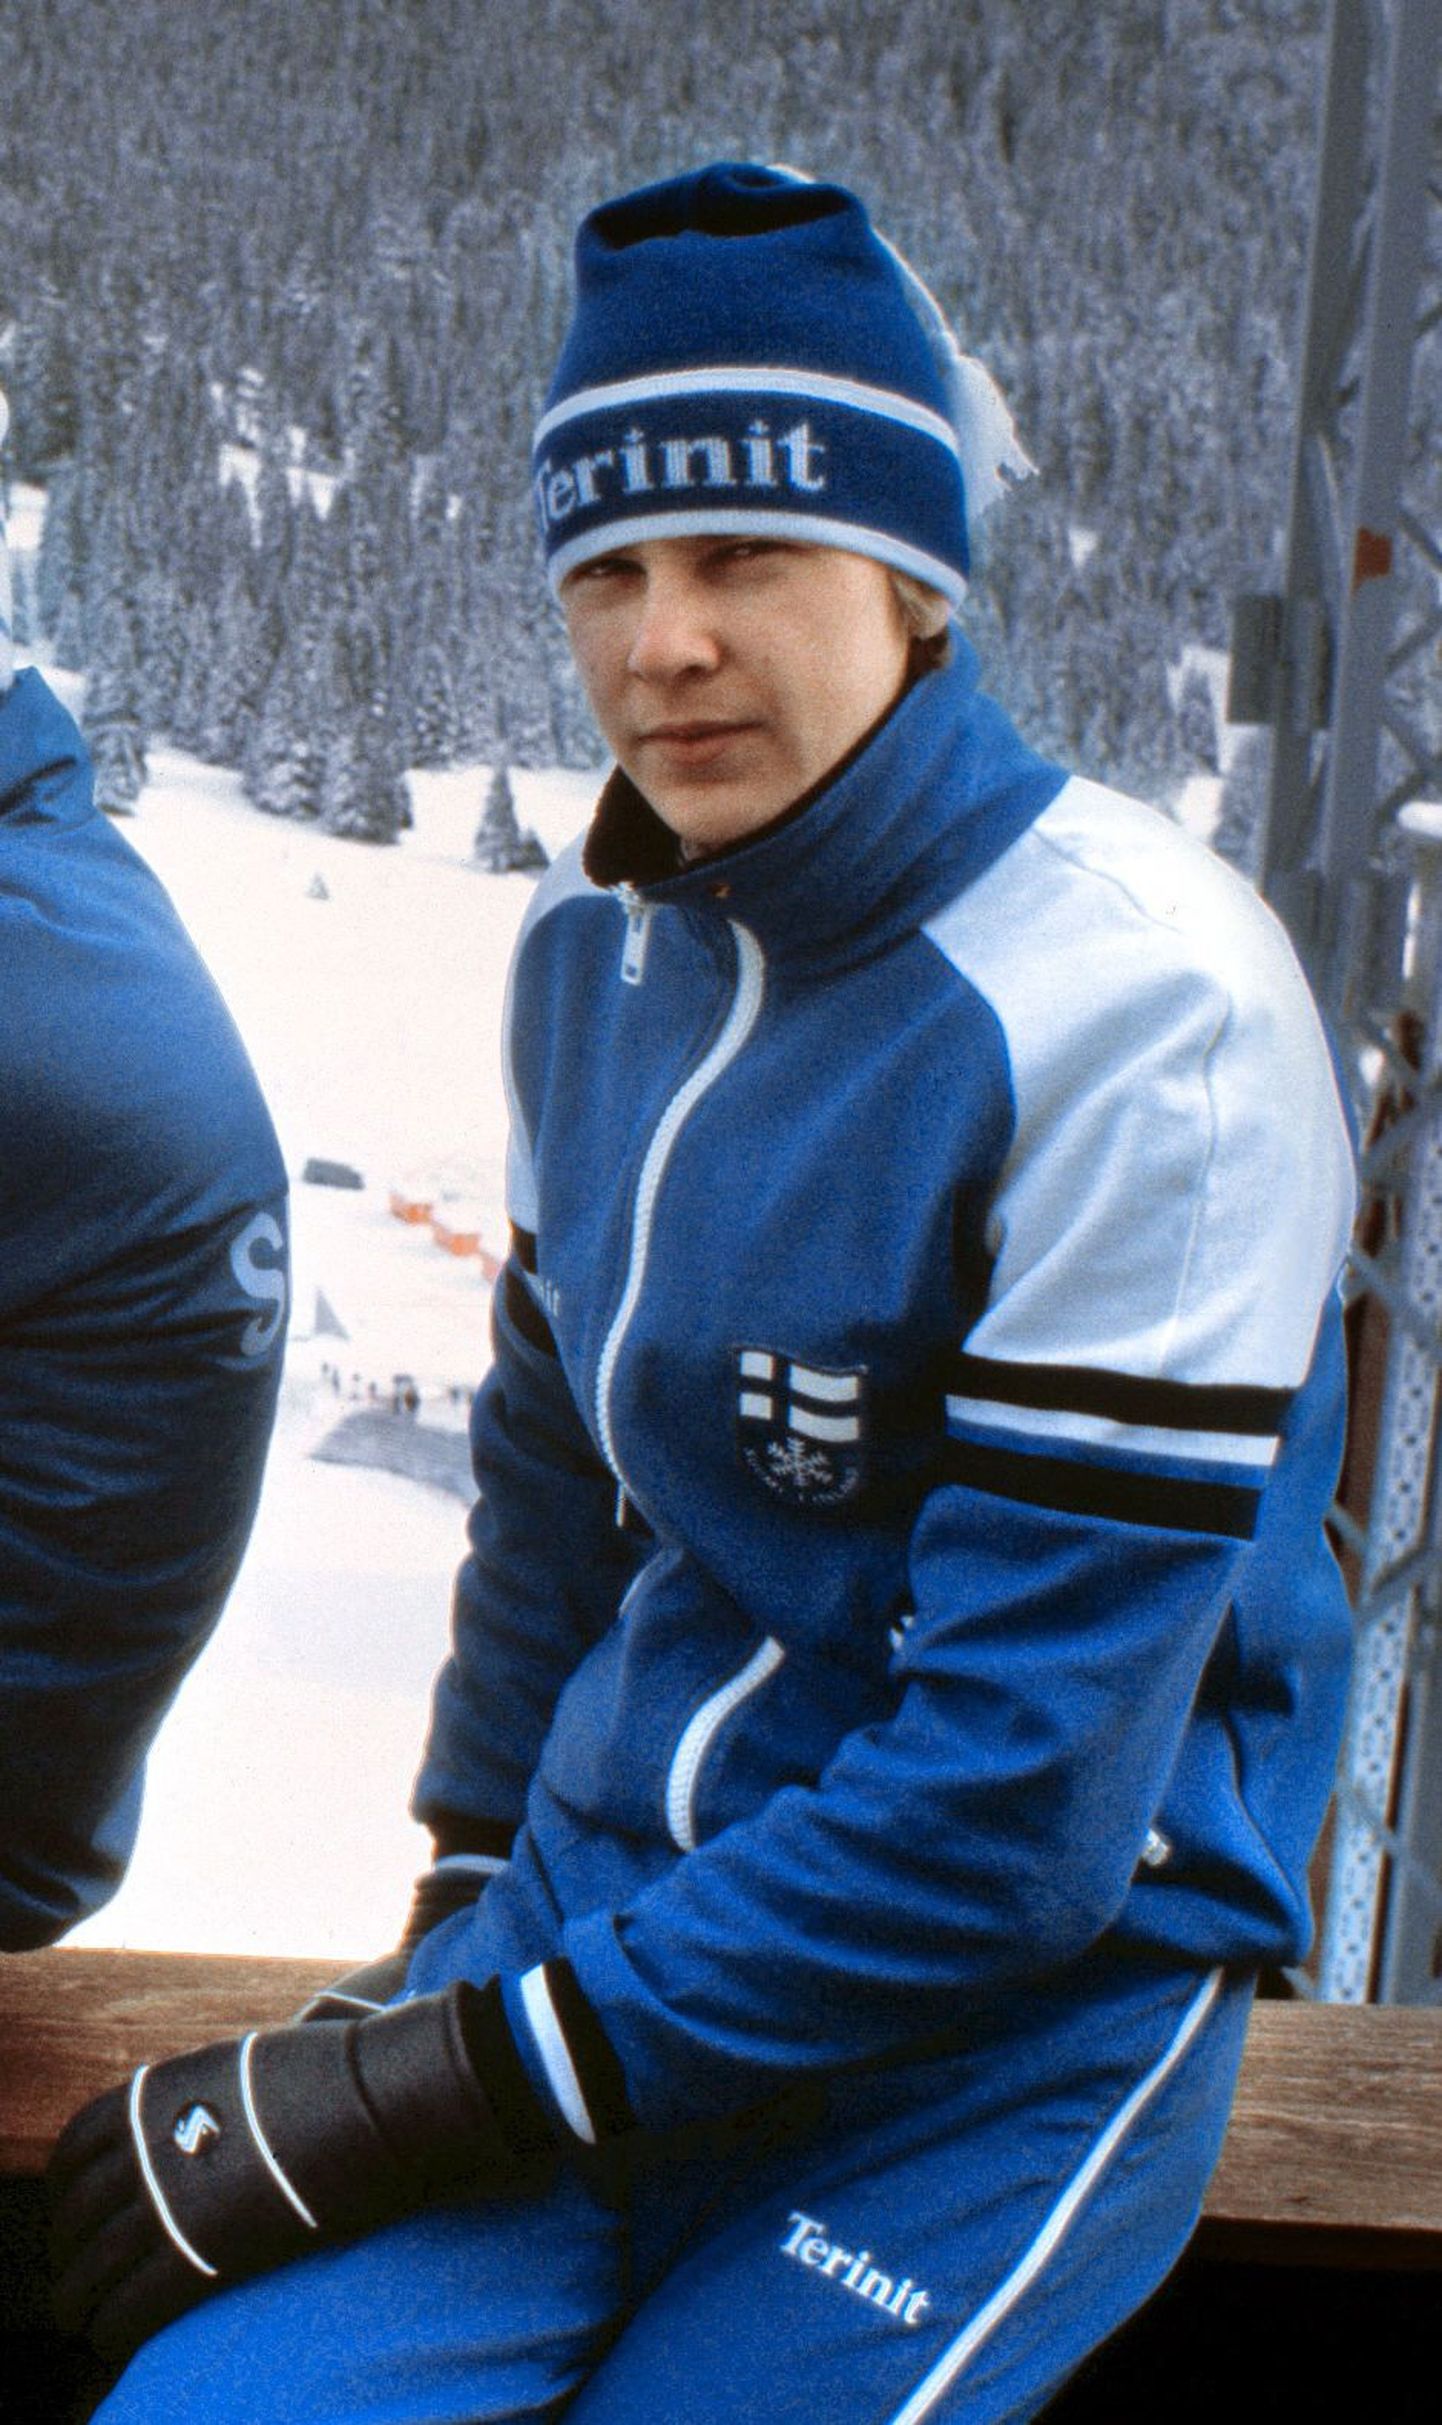 Soome suusahüppelegend Matti Nykänen 1984. aastal.